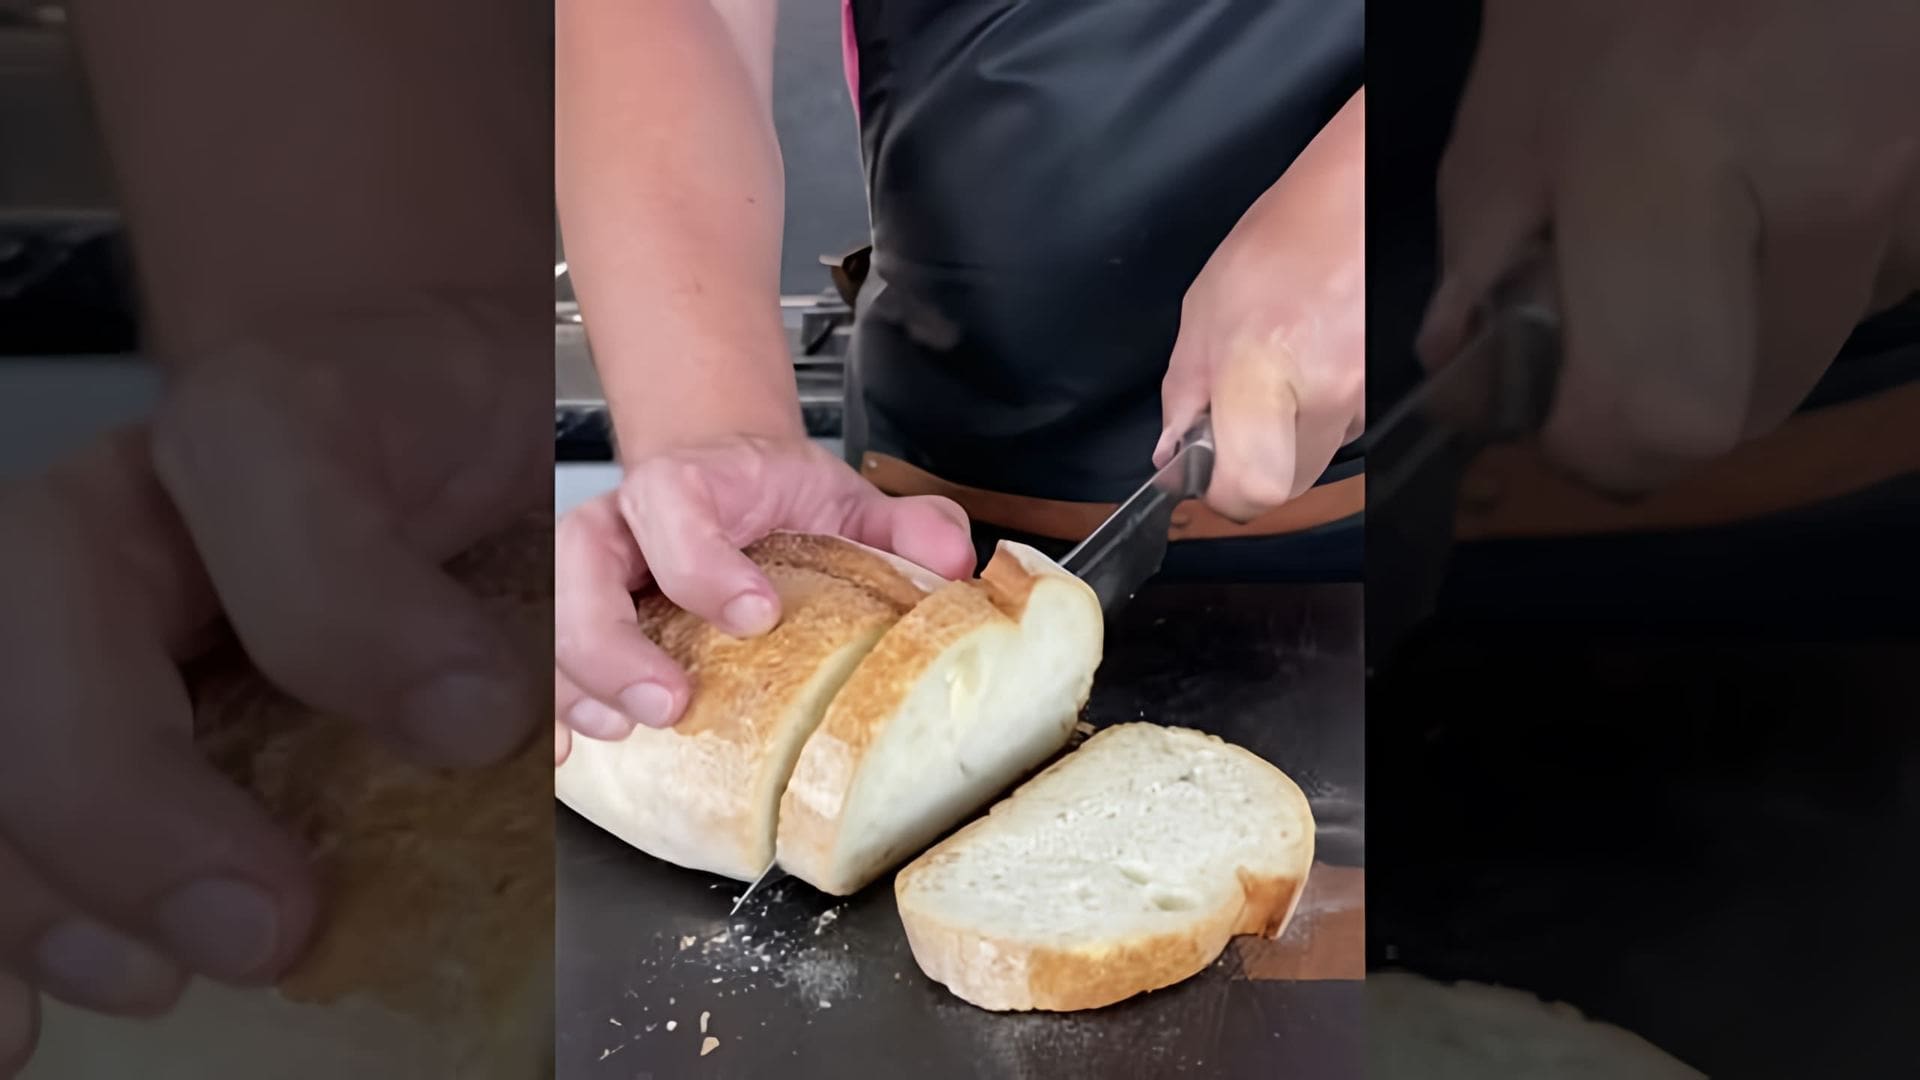 В этом видео демонстрируется процесс приготовления брускетт - итальянских закусок на основе тостов